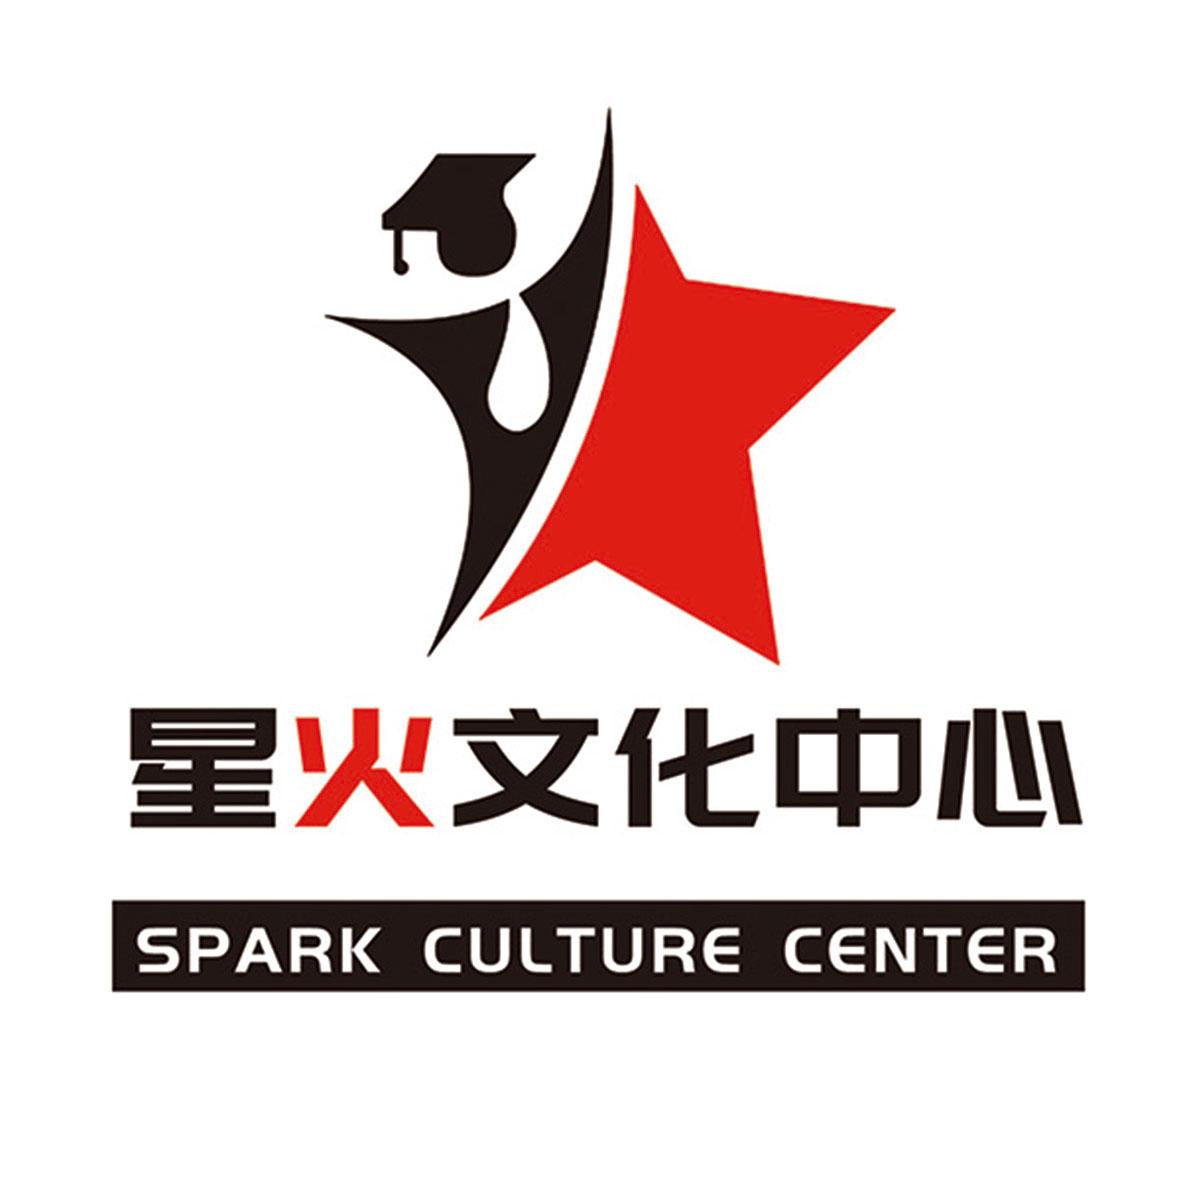 商标文字星火文化中心 spark culture center商标注册号 43137597